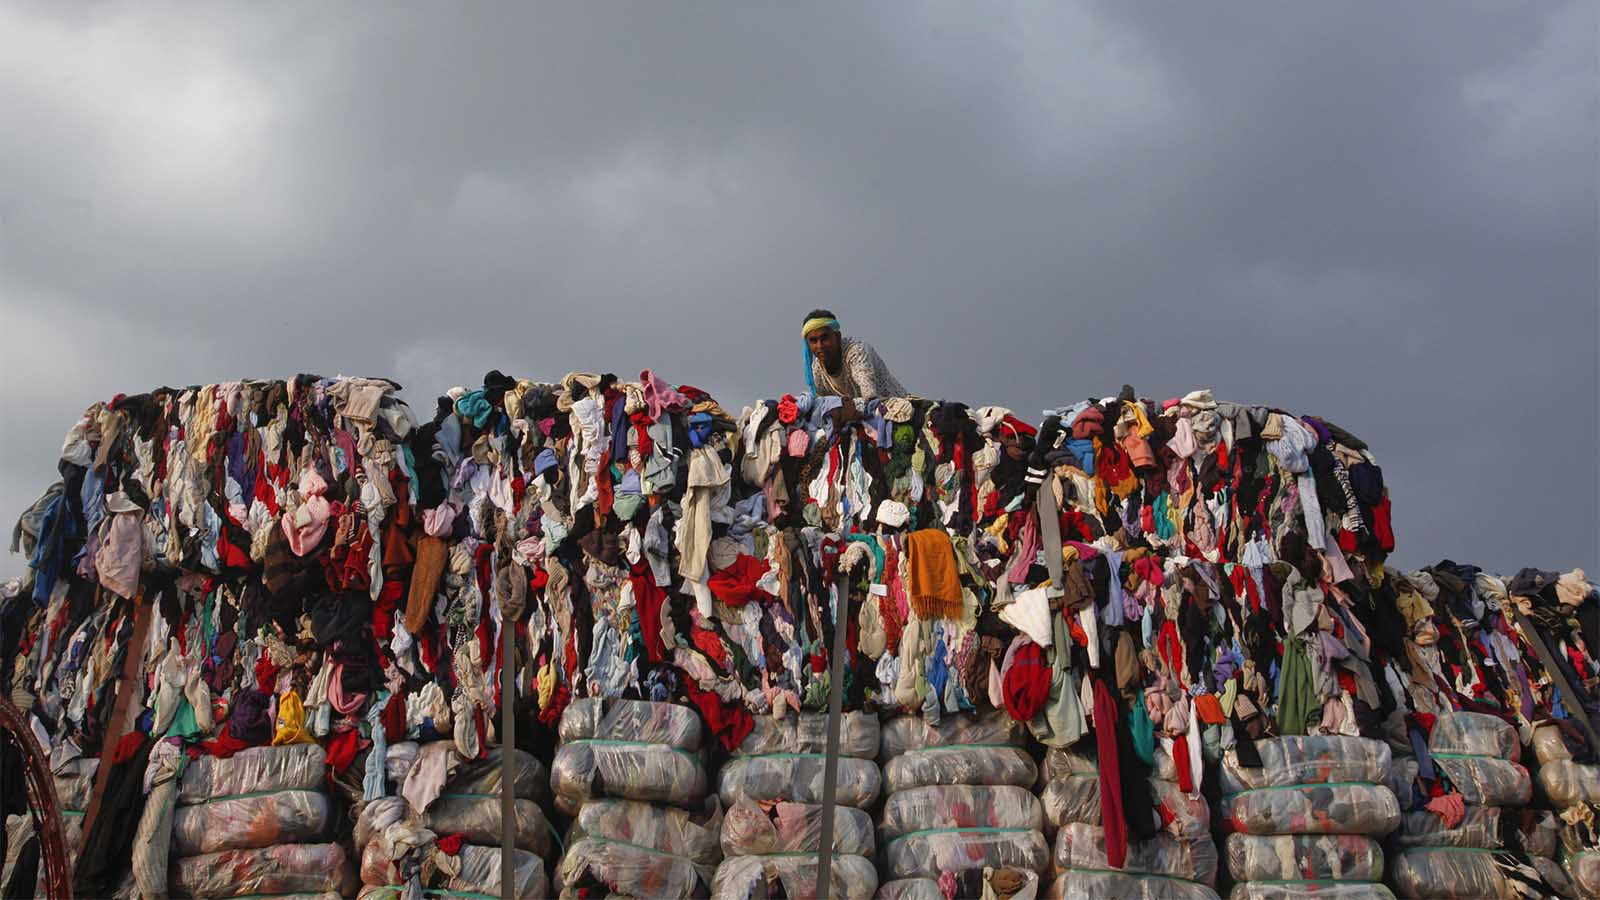 ערימת פסולות מבגדים בפקיסטן (צילום: REUTERS/Mohsin Raza)